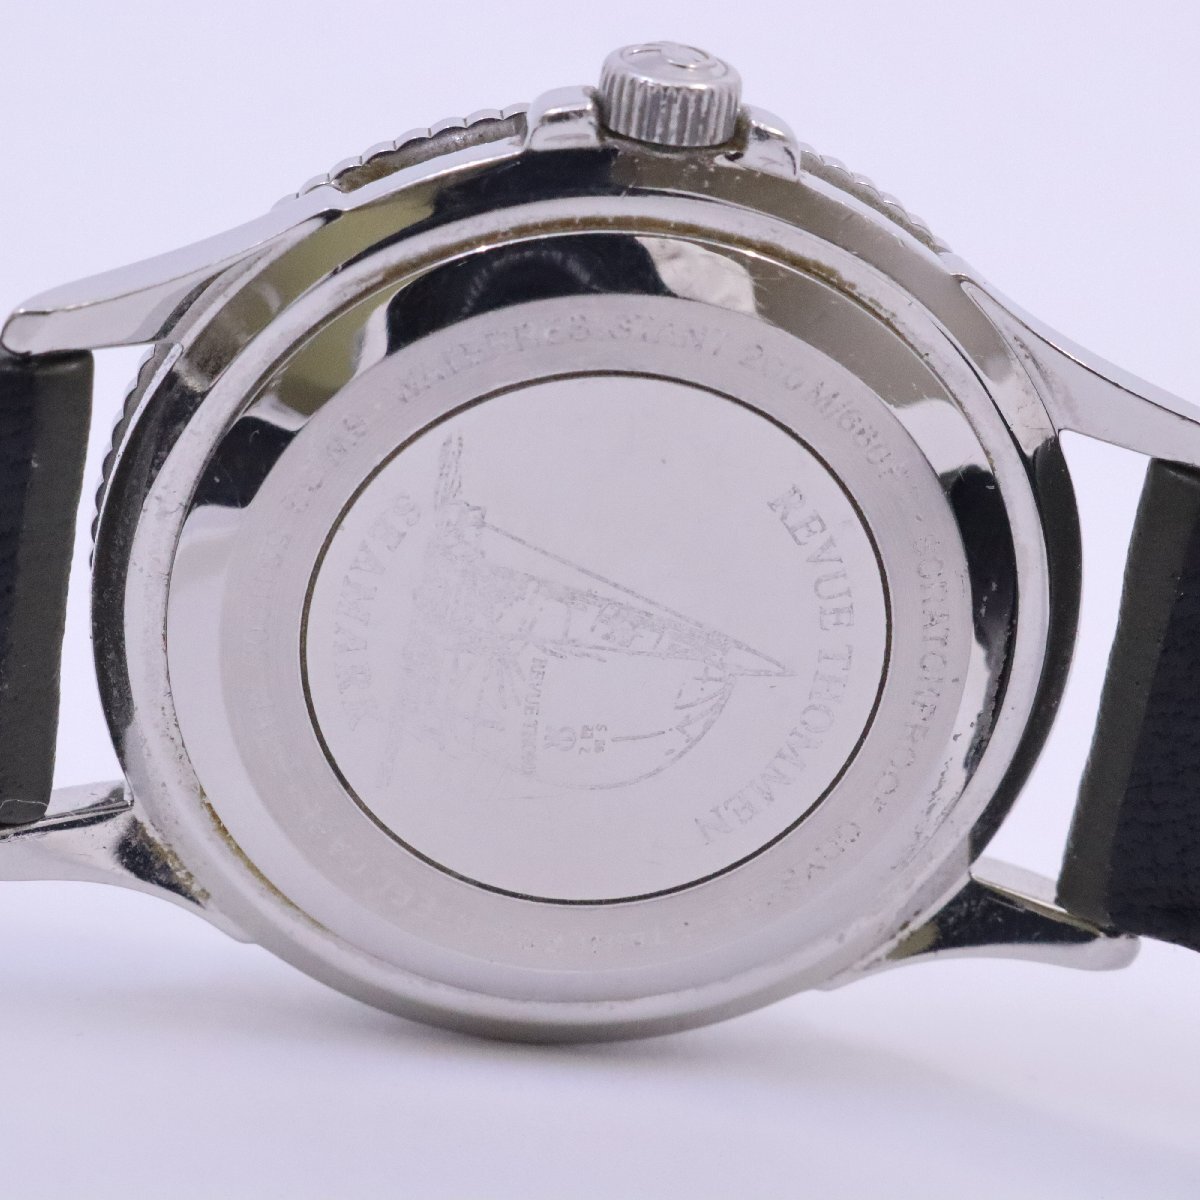  Revue Thommen Cima -k кварц мужские наручные часы белый × зеленый циферблат неоригинальный ремень 5811005[... ломбард ]